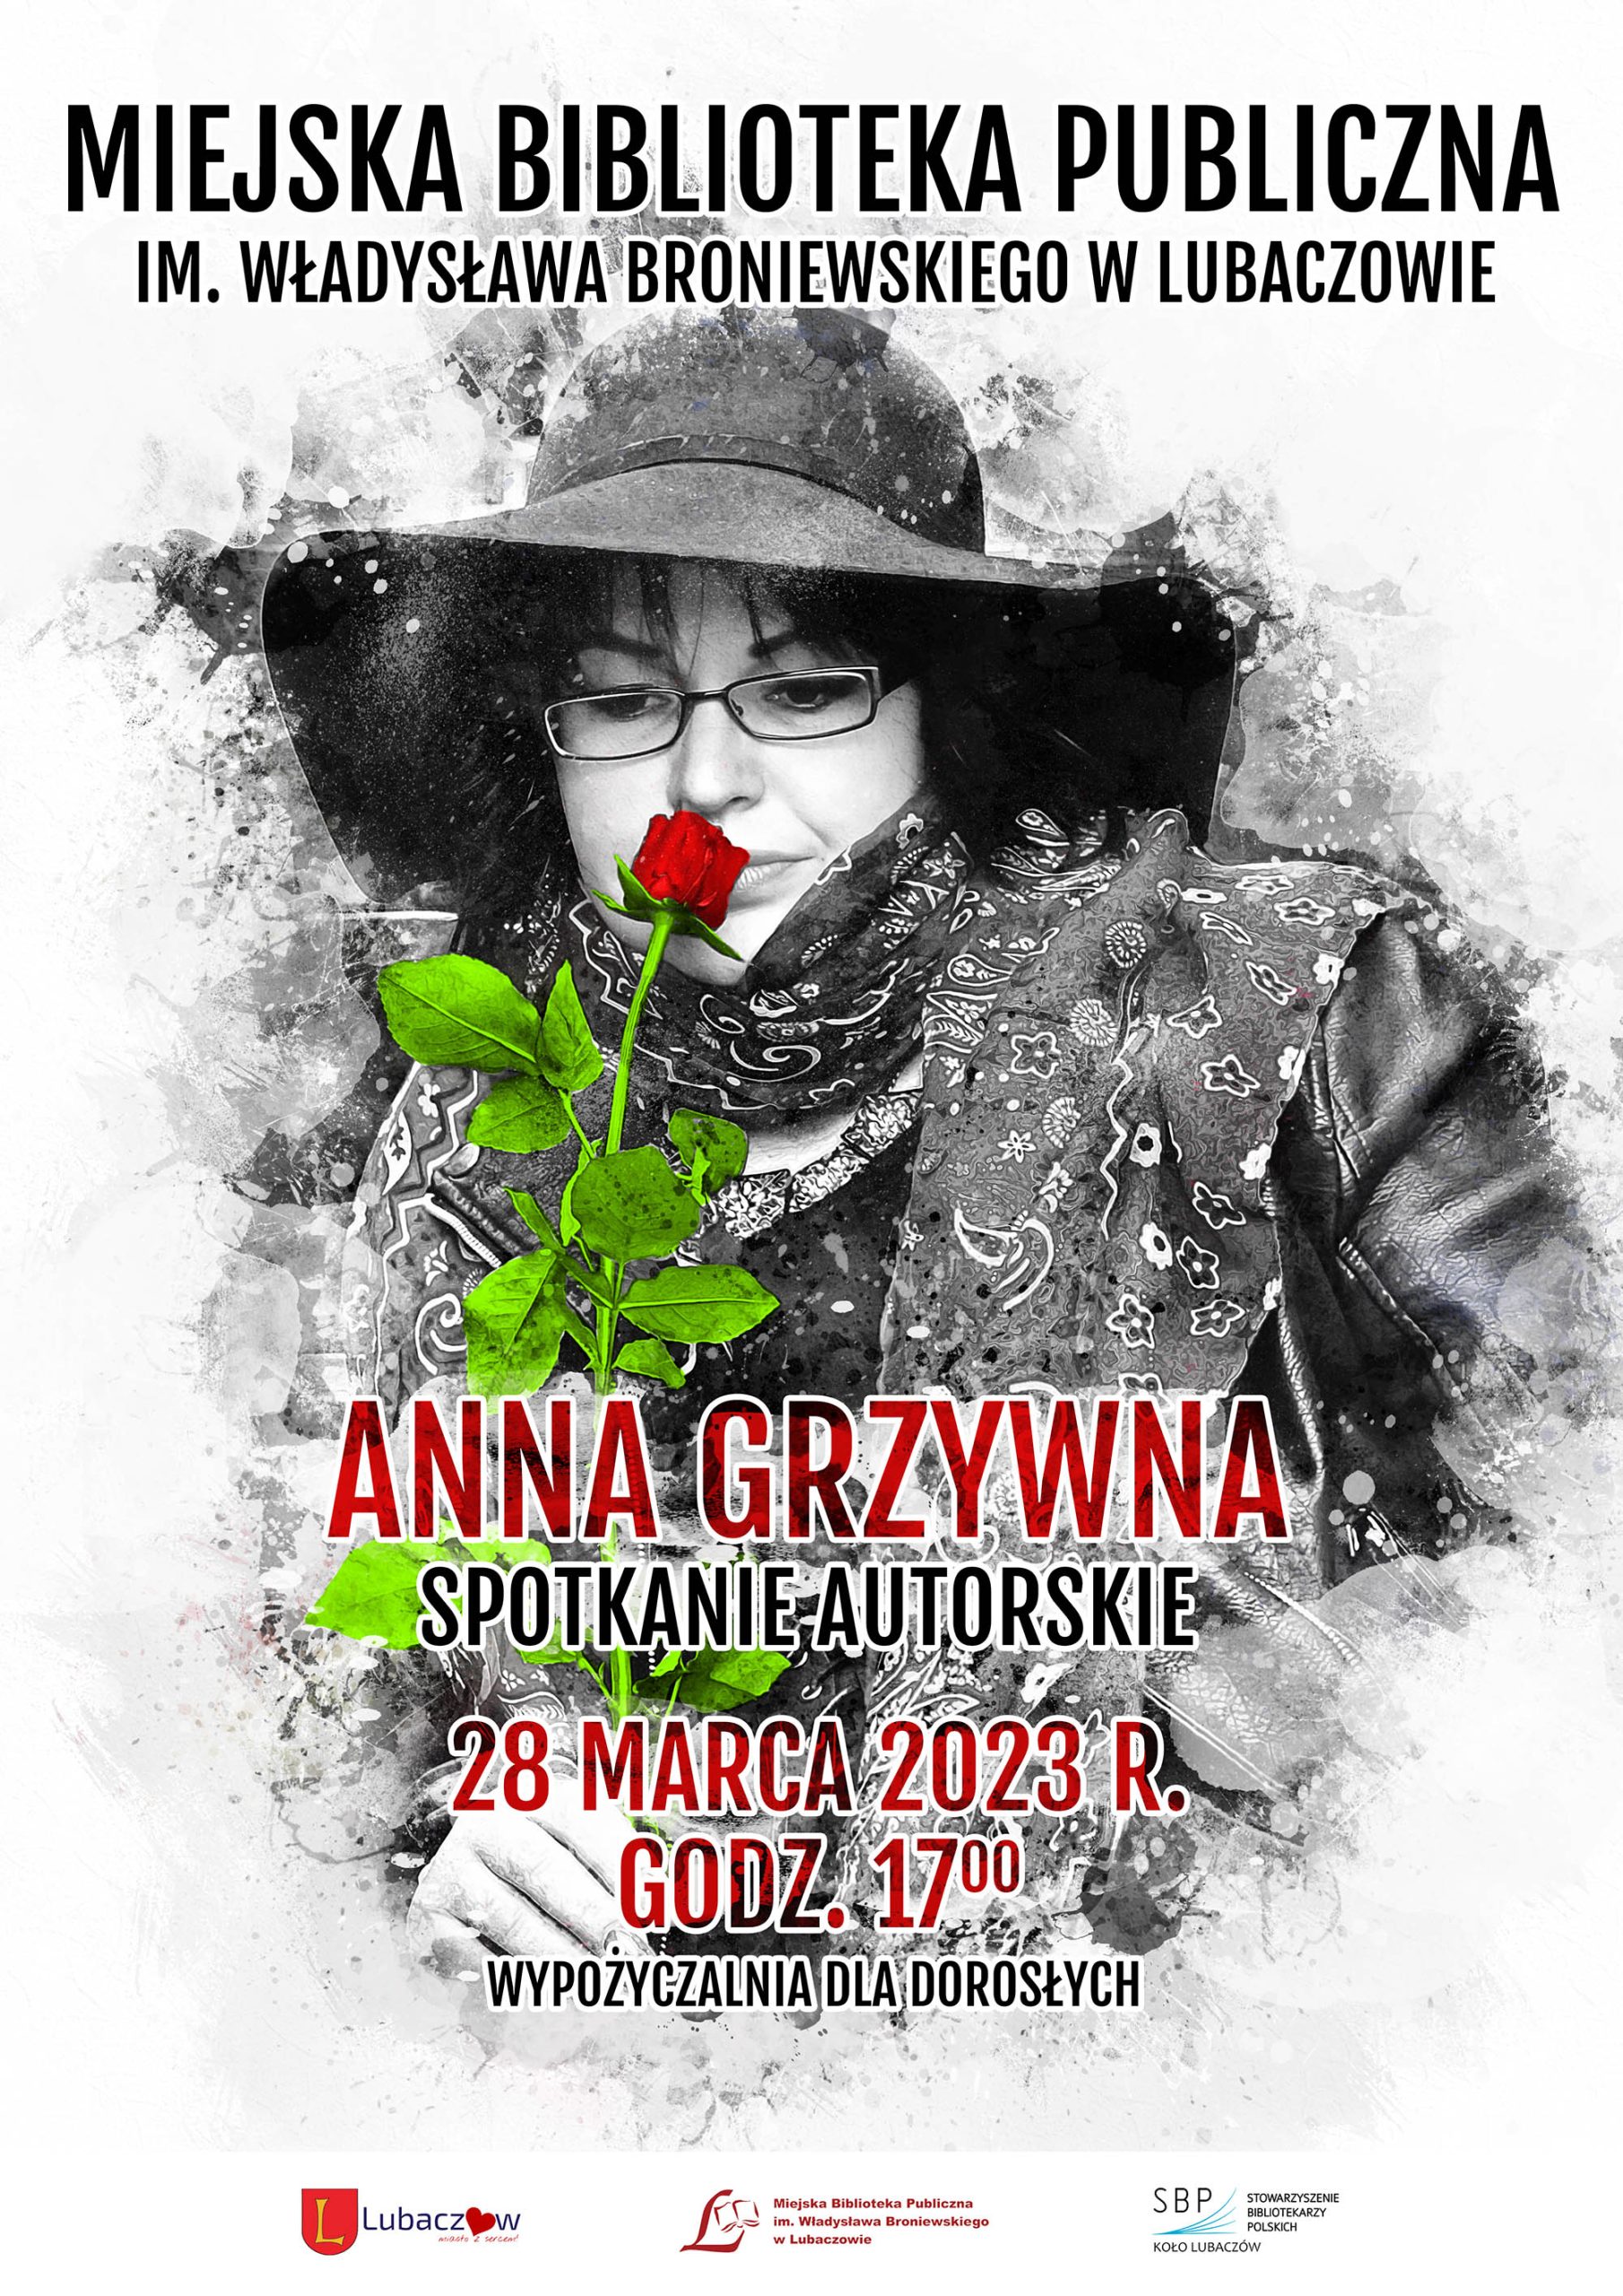 Spotkanie autorskie z Anną Grzywną - plakat promujący wydarzenie, które odbędzie się 28 marca 2023 r., godz. 17:00 w Wypożyczalni dla Dorosłych MBP w Lubaczowie